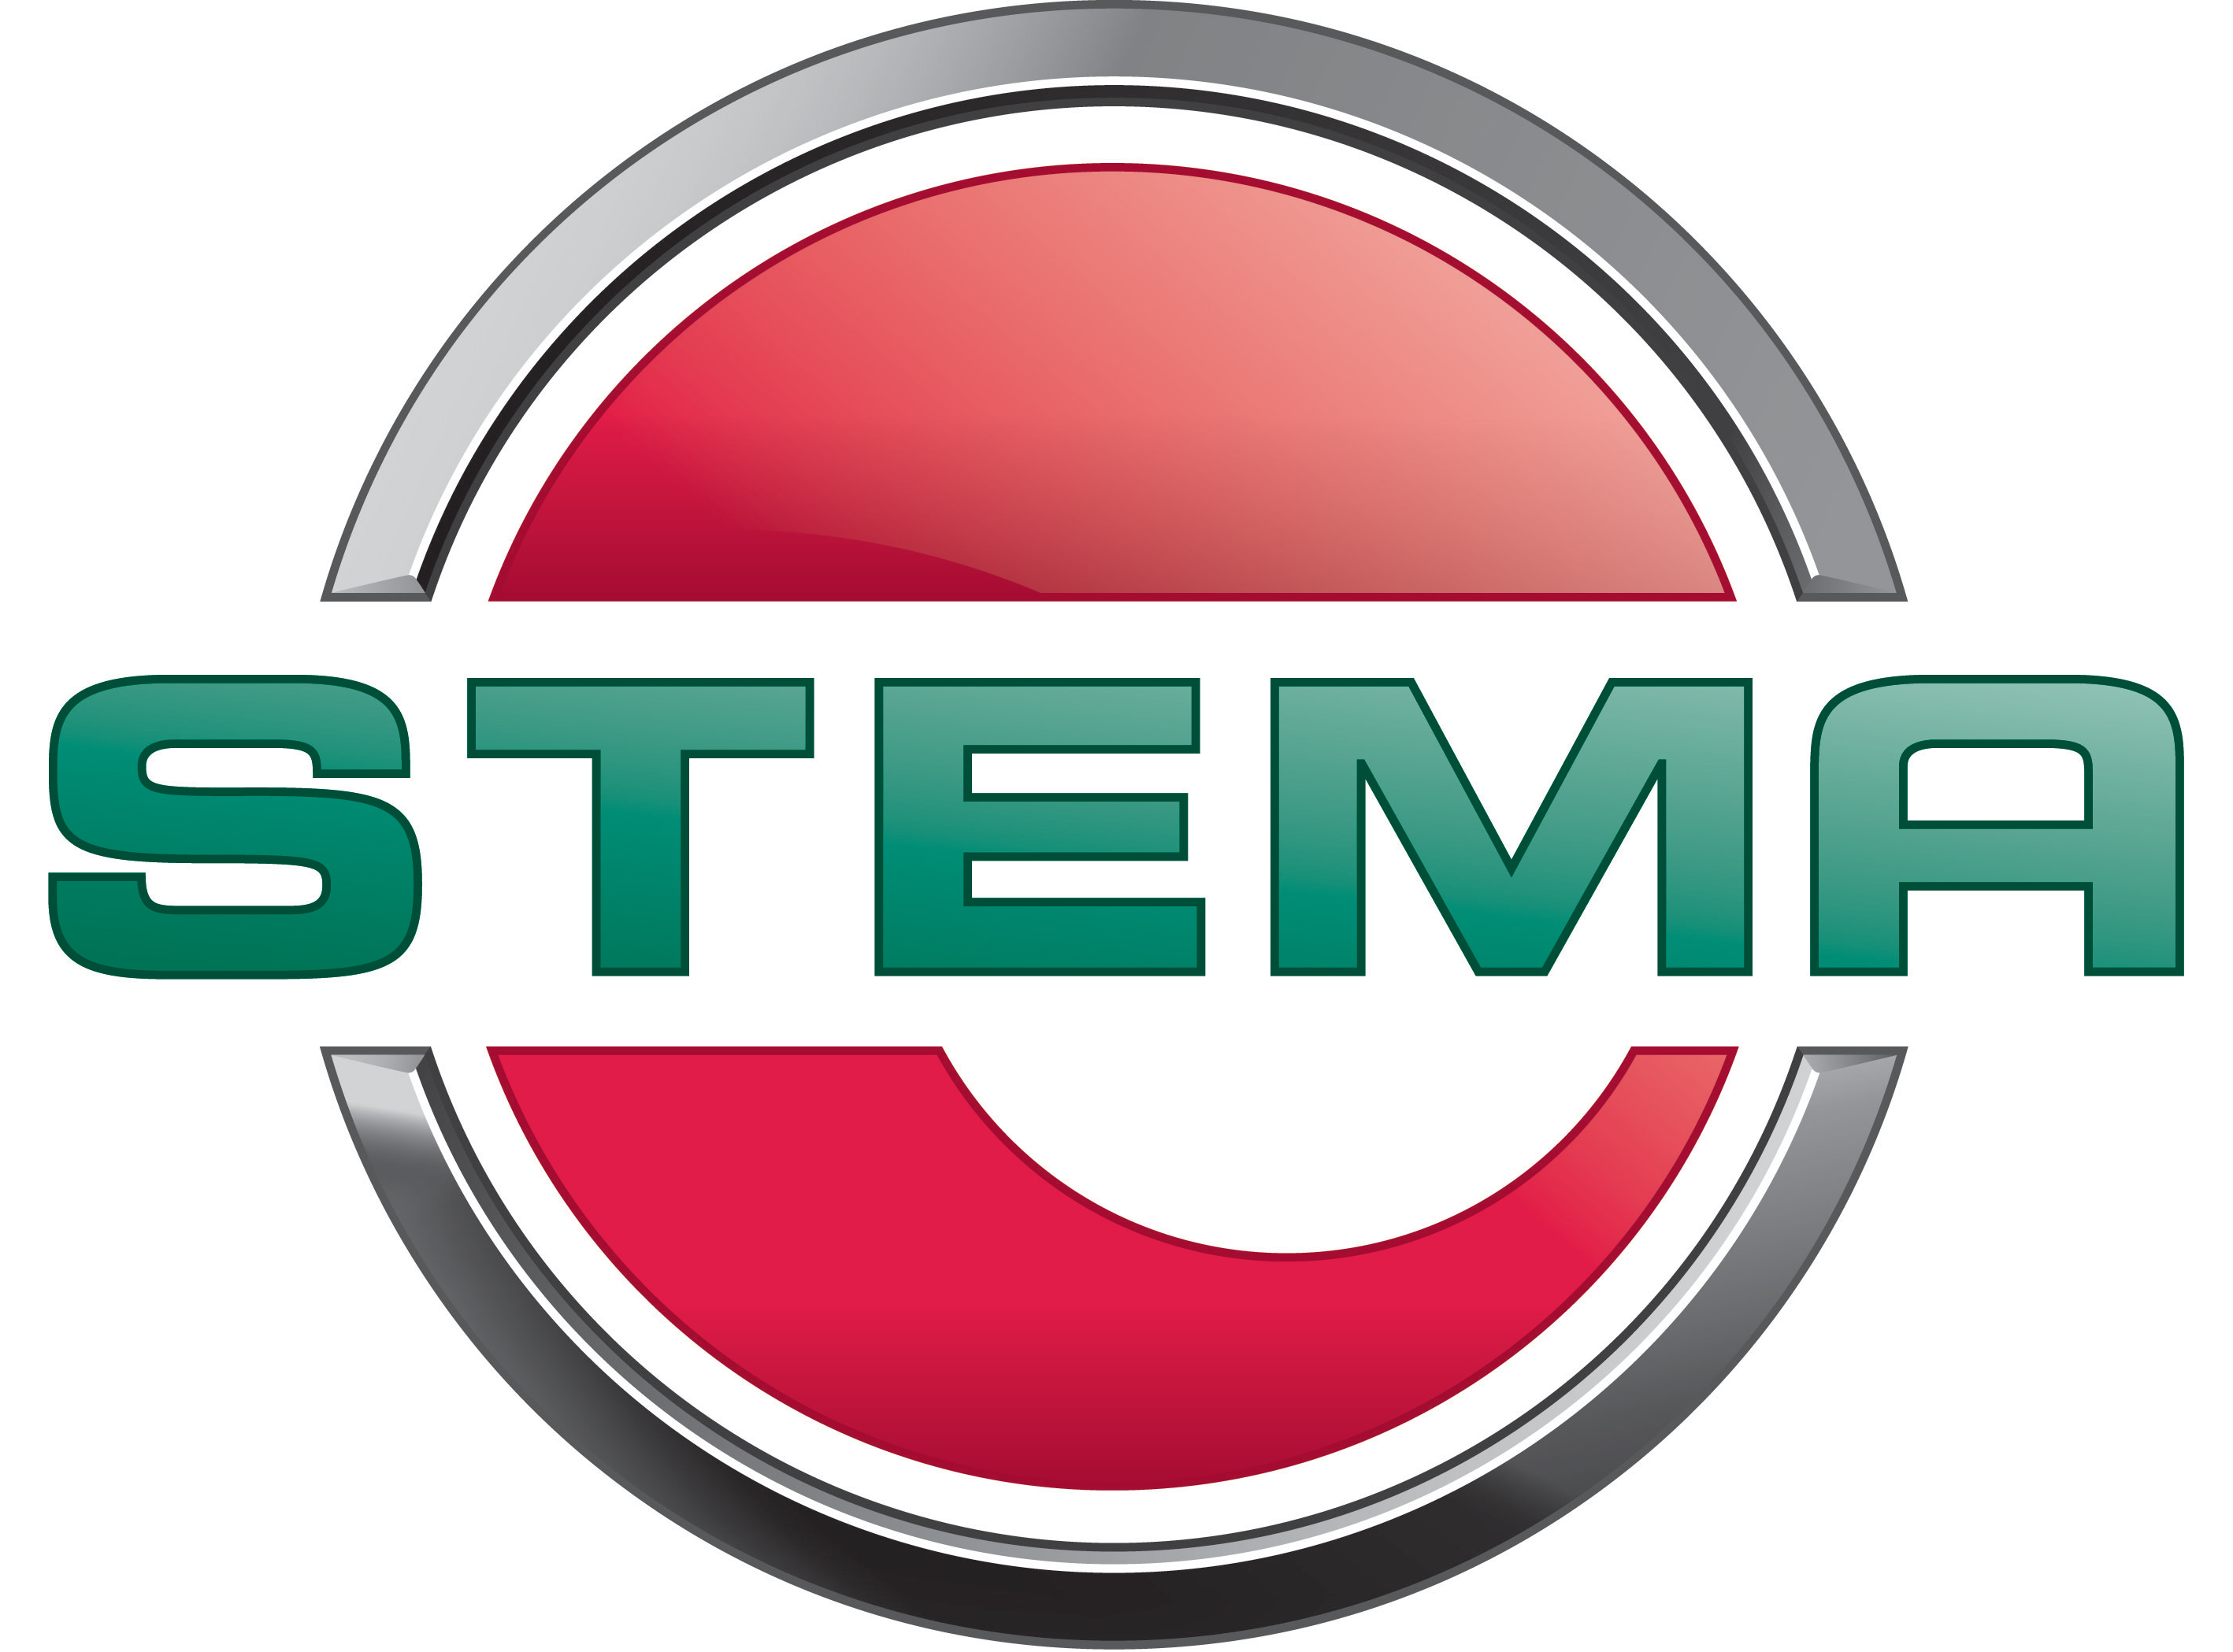 STEMA - Anhängerhersteller aus Deutschland